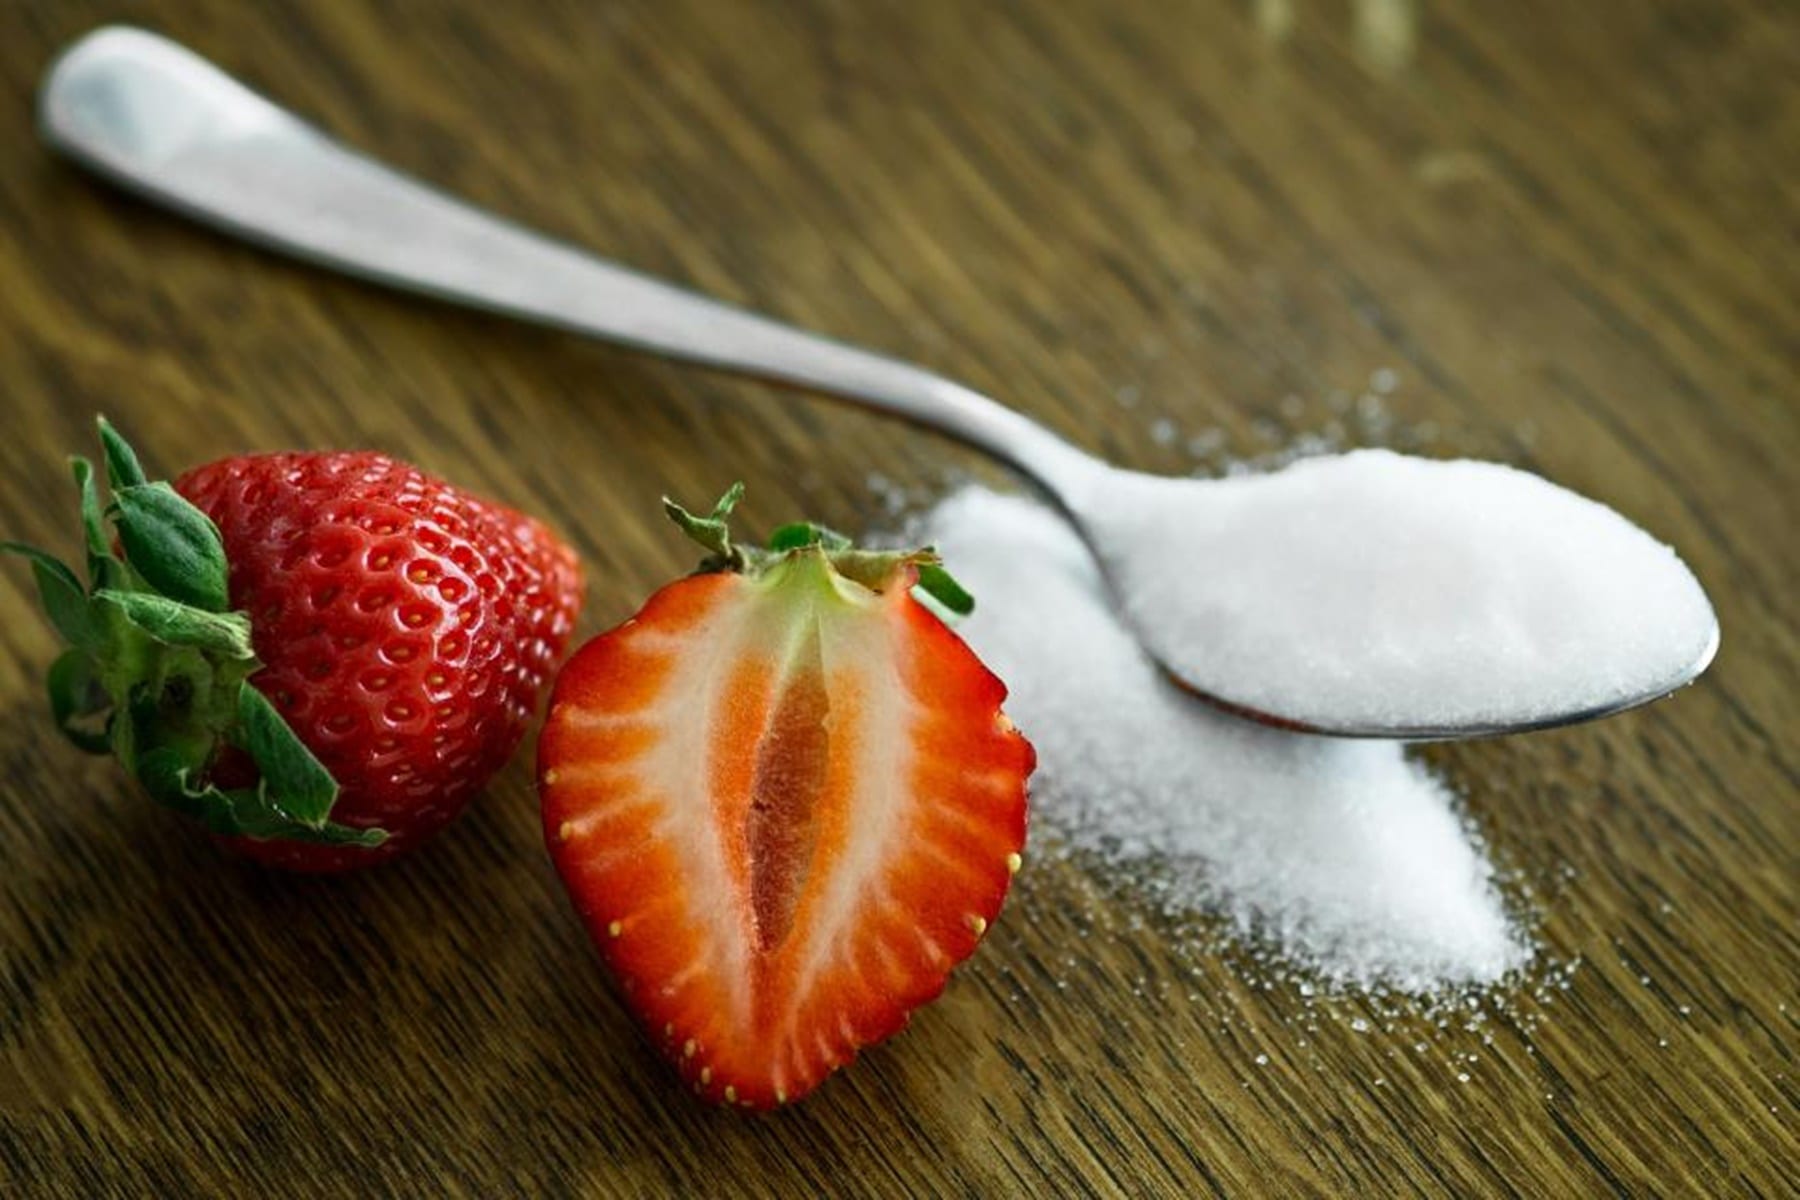 Vyhnite sa cukru | Rafinovaný cukor škodí | Zdravie a cukor